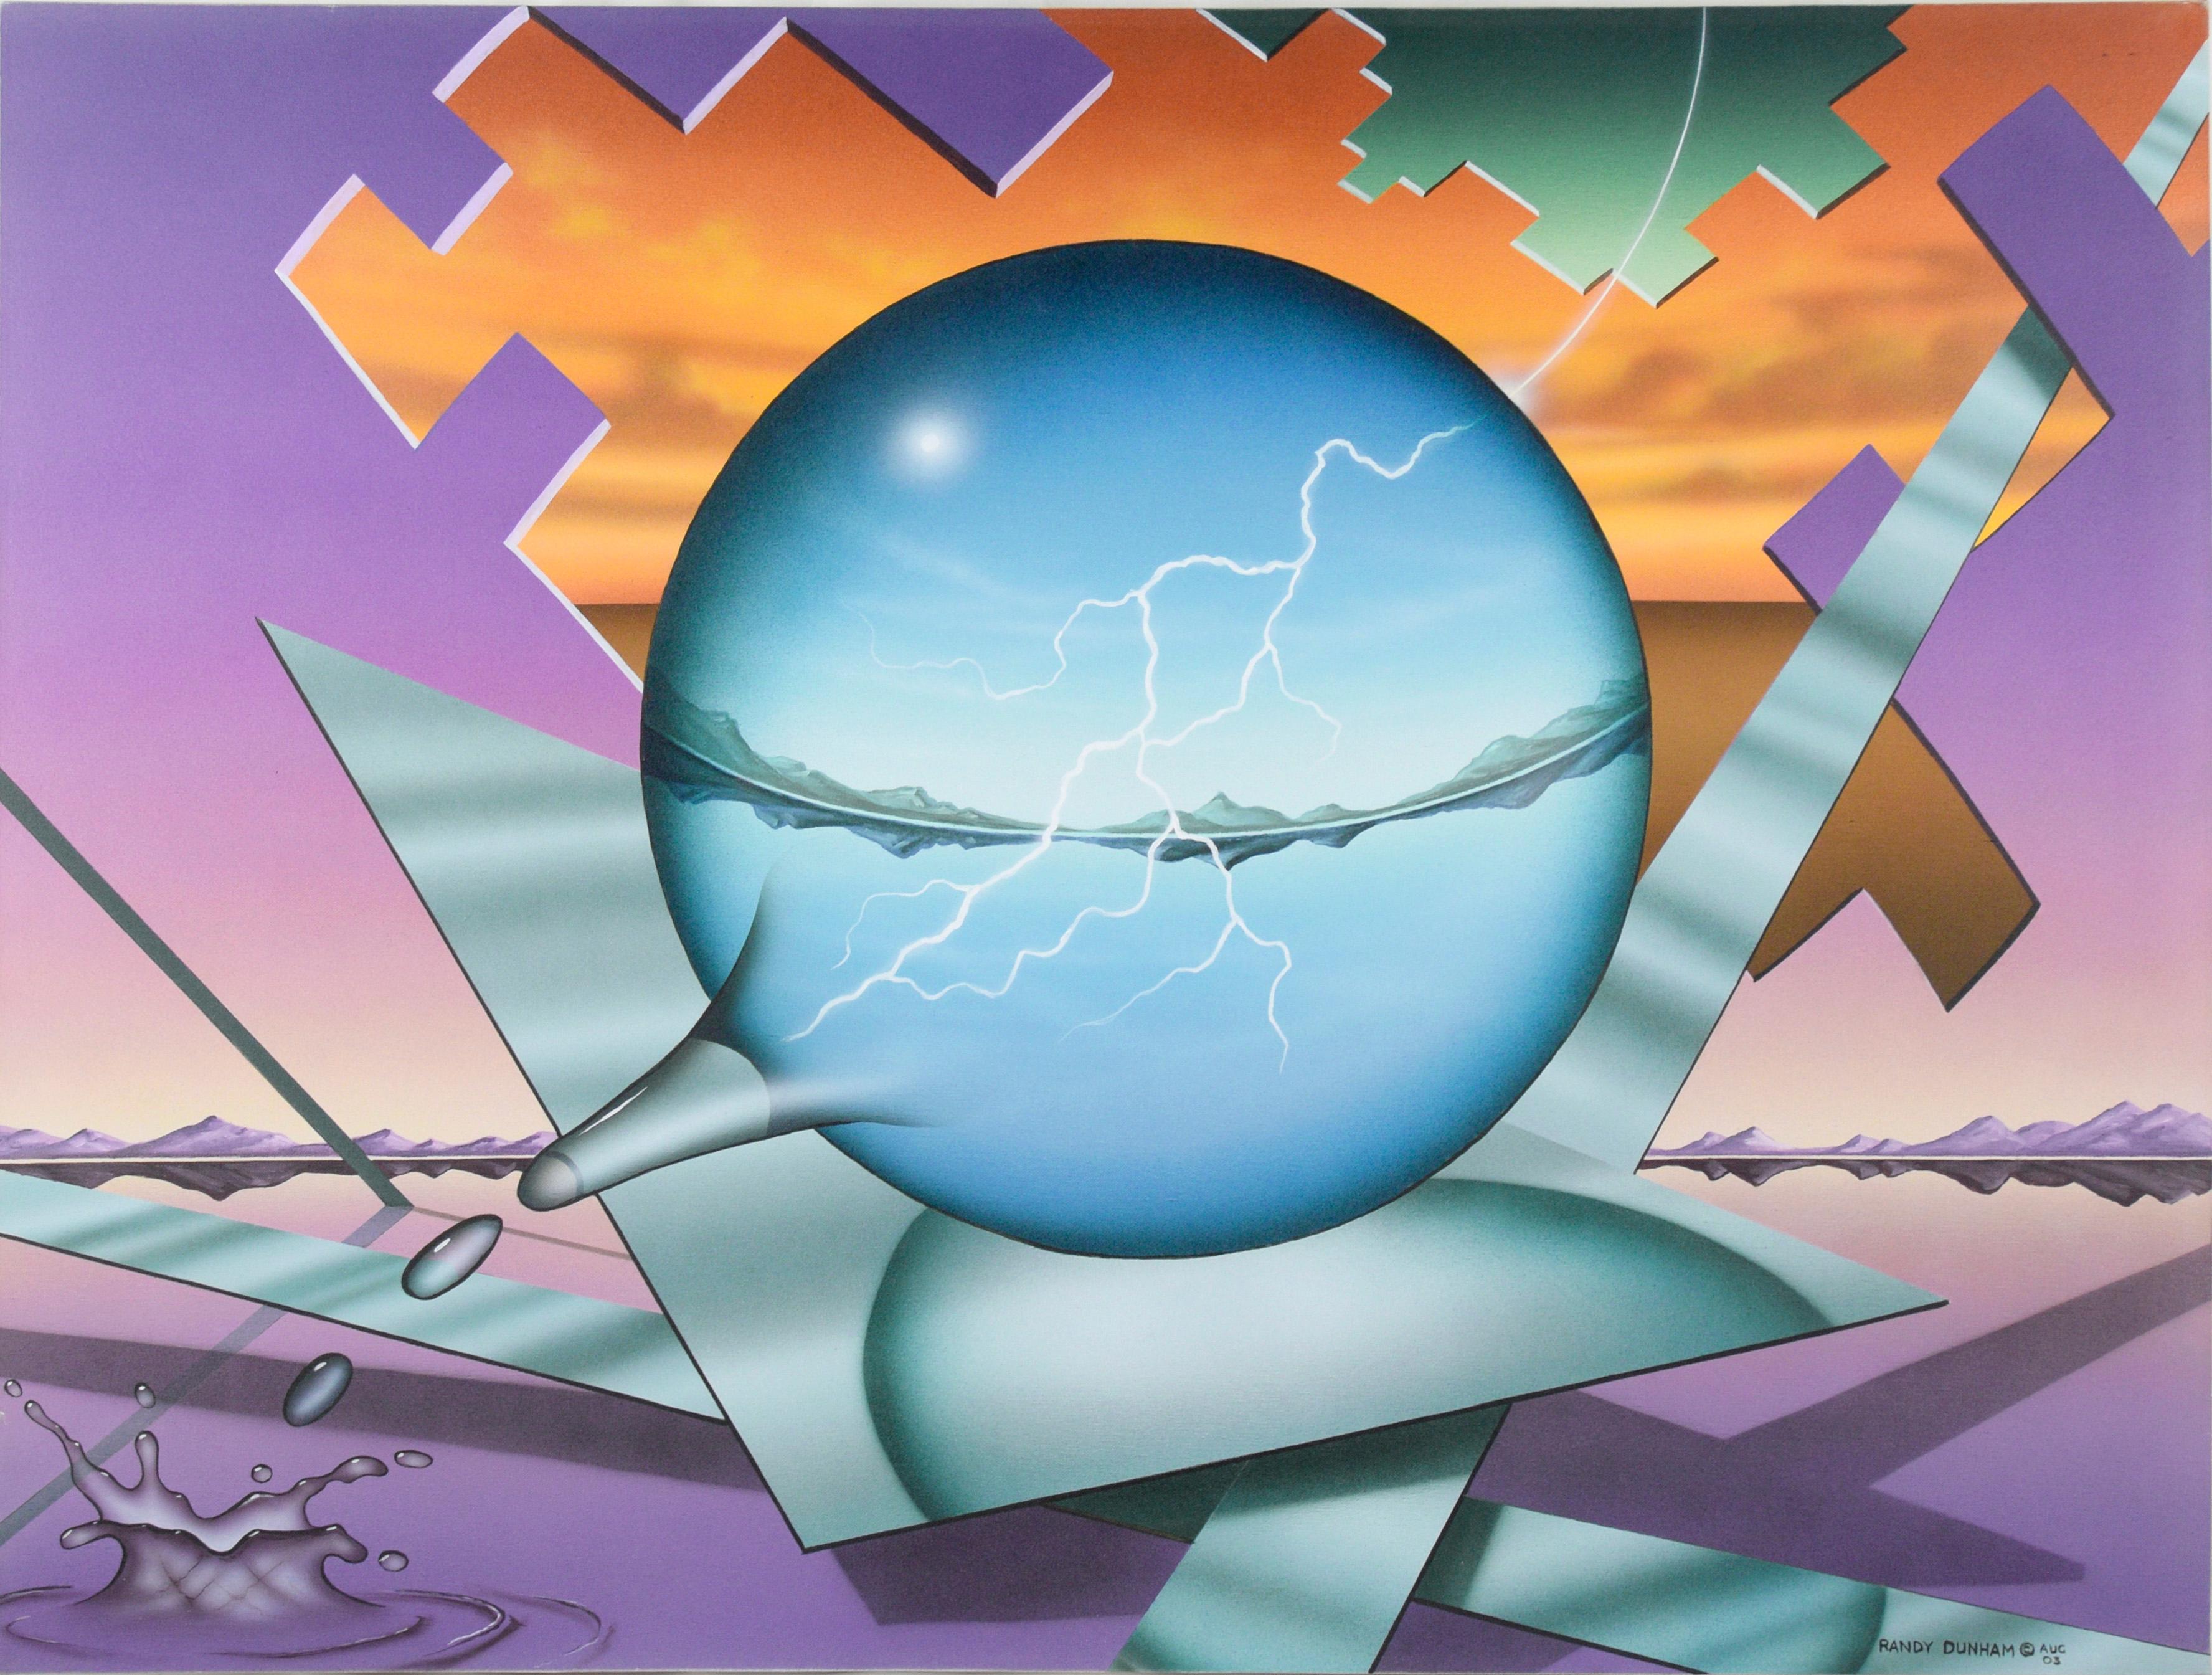 Landscape Painting Randy Dunham - "Striking" Natures Balance - Paysage géométrique surréaliste en acrylique sur toile